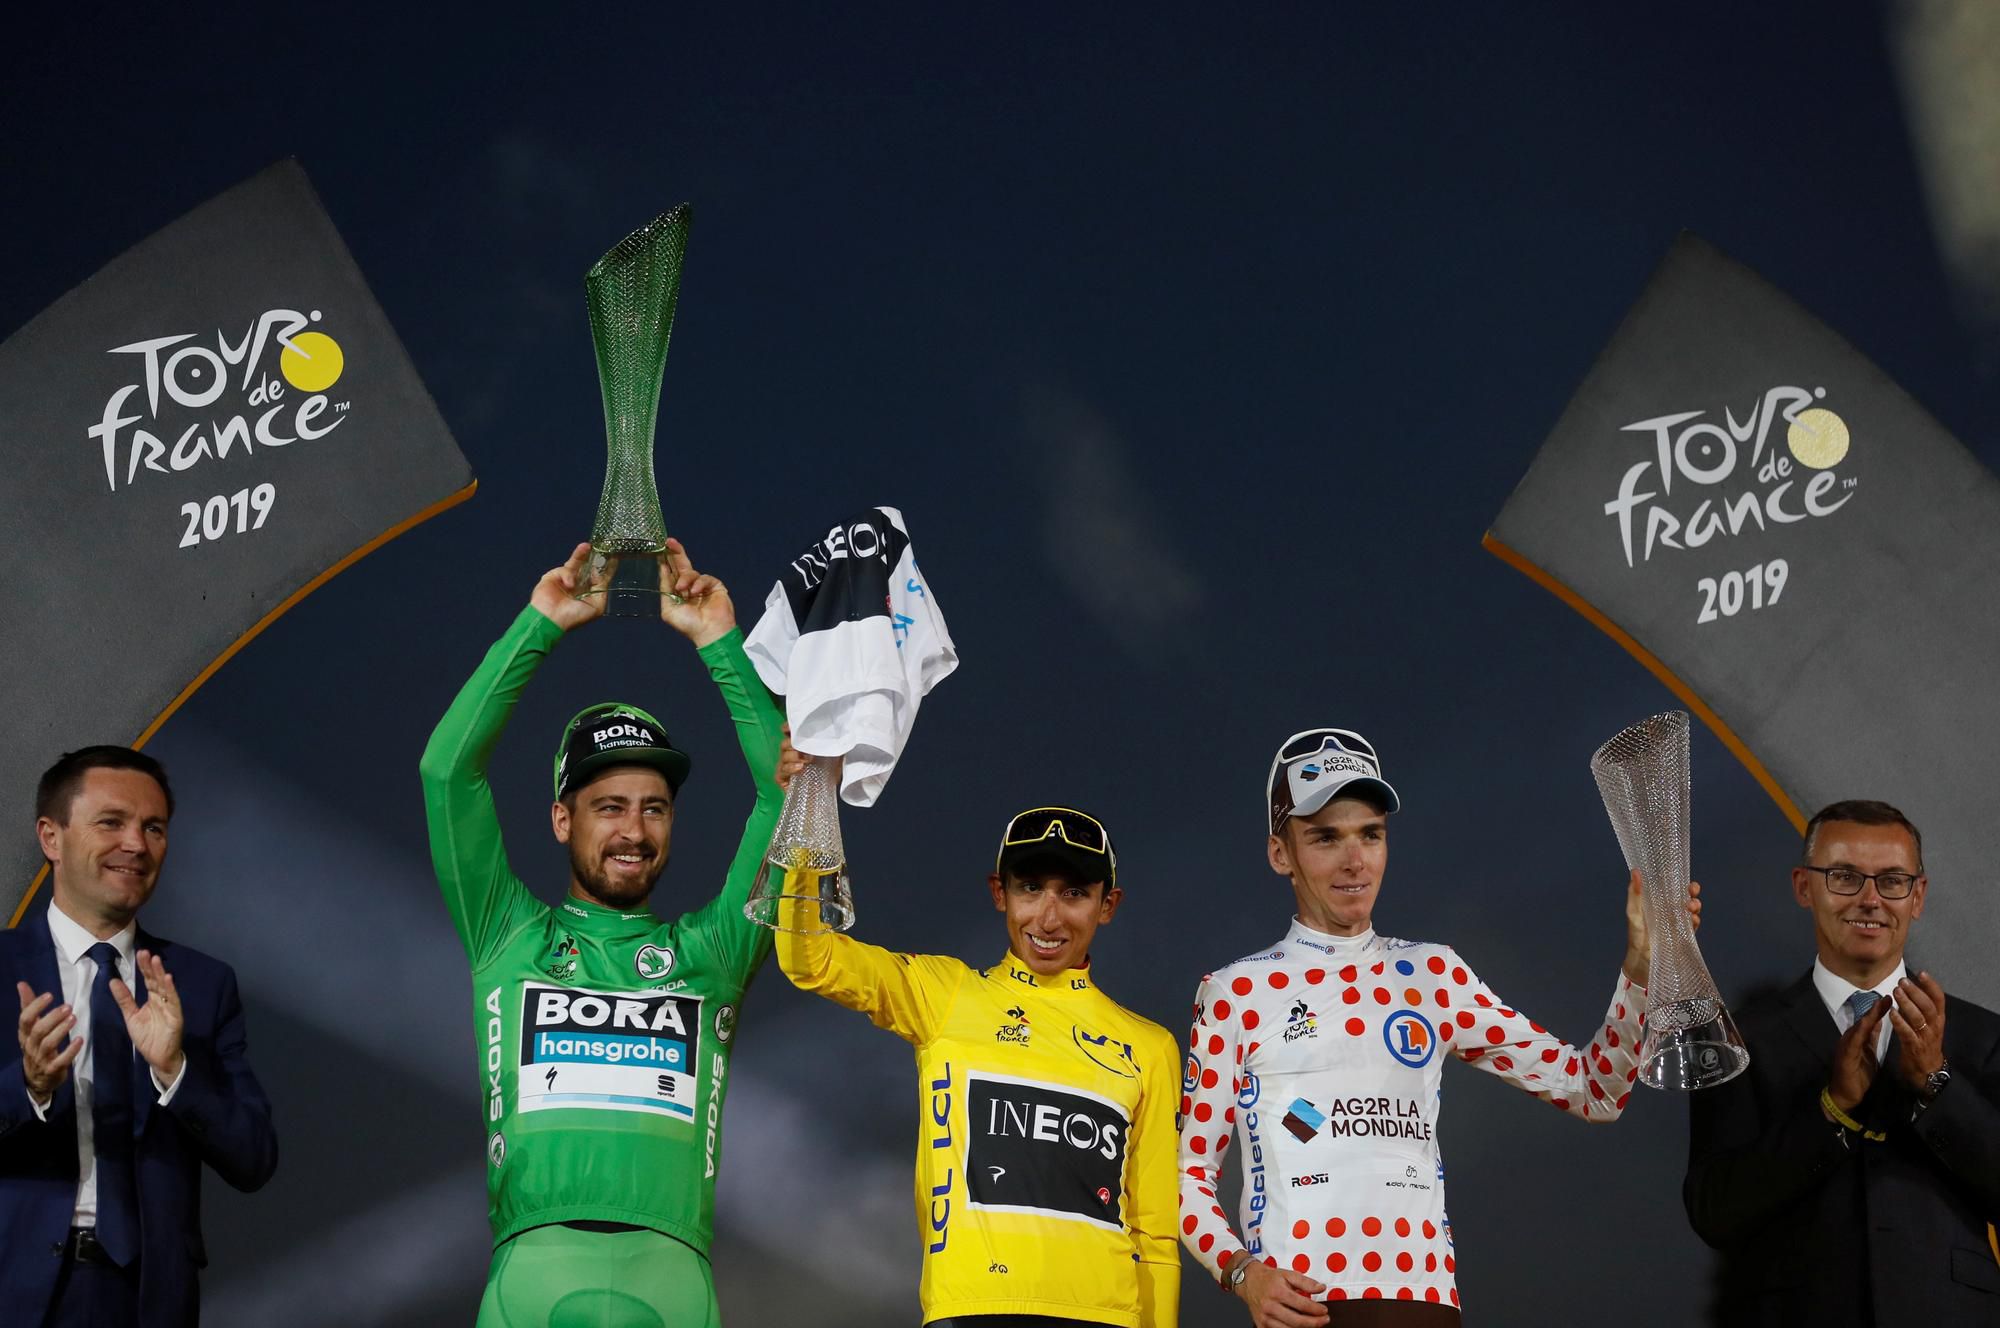 Víťazi Tour de France 2019